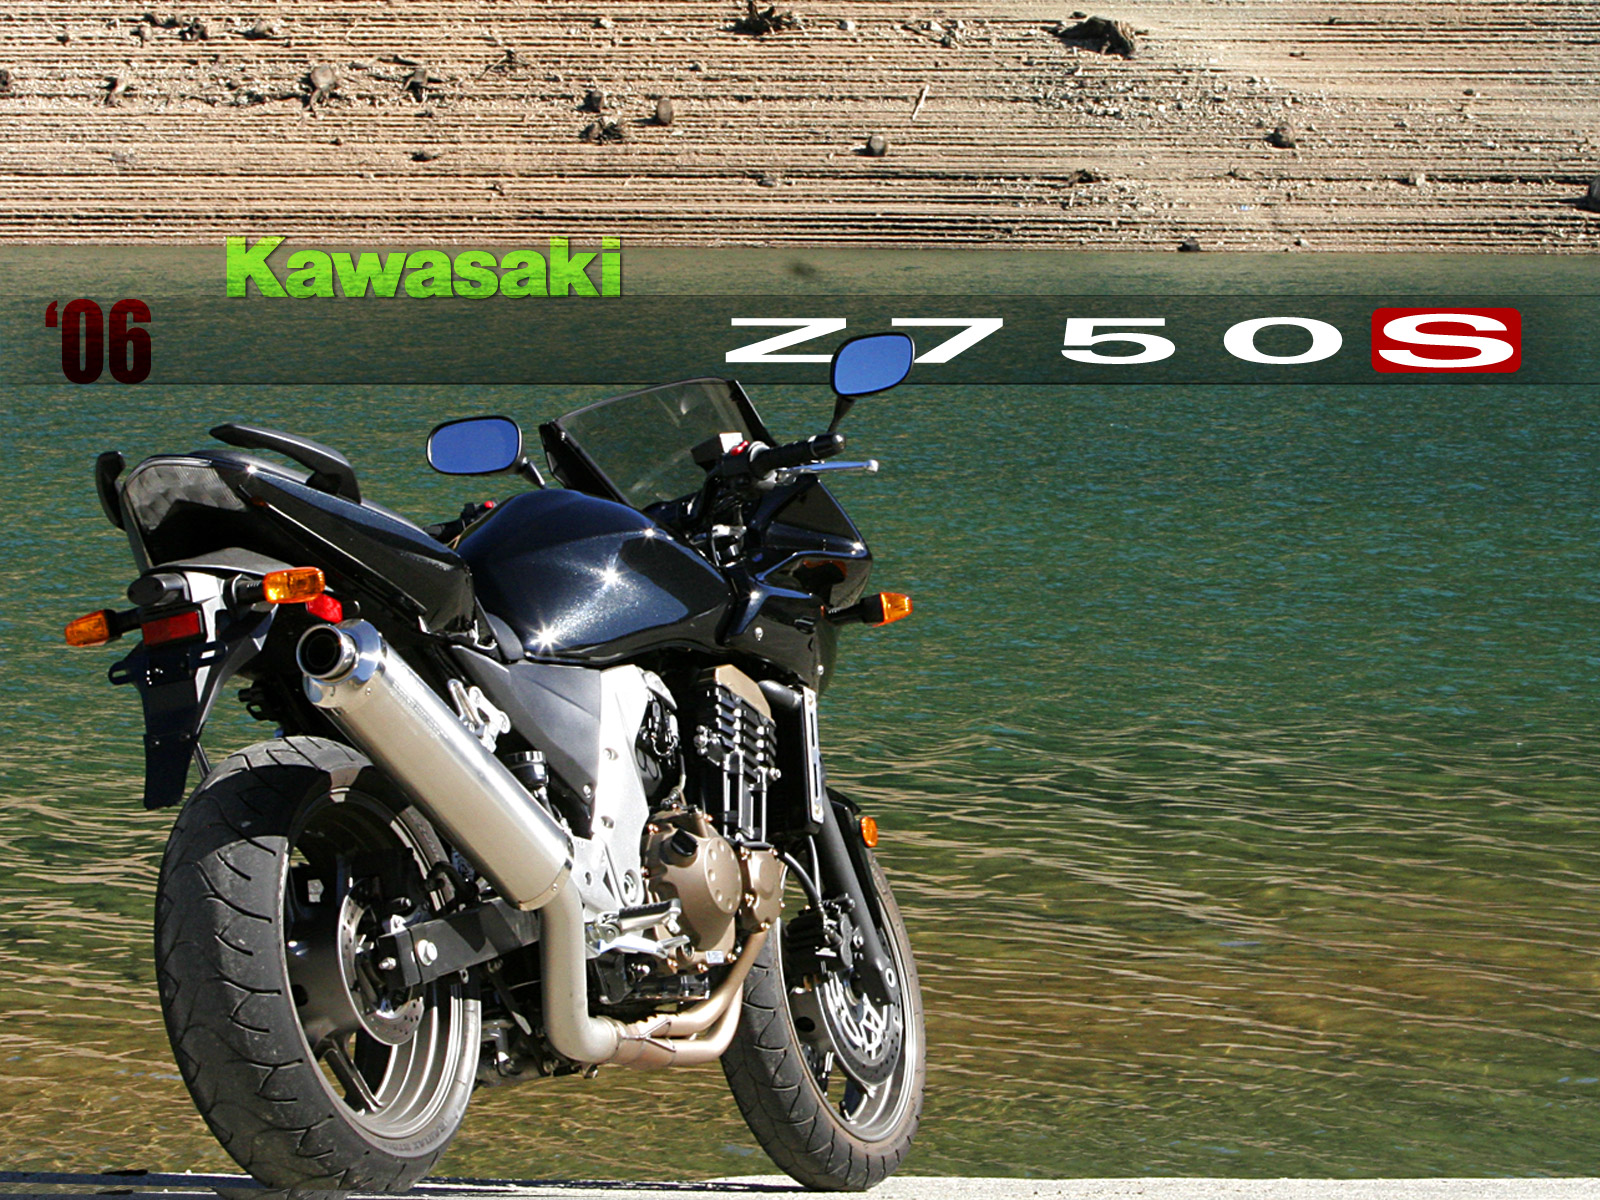 2006款川崎Z750S摩托车图片1